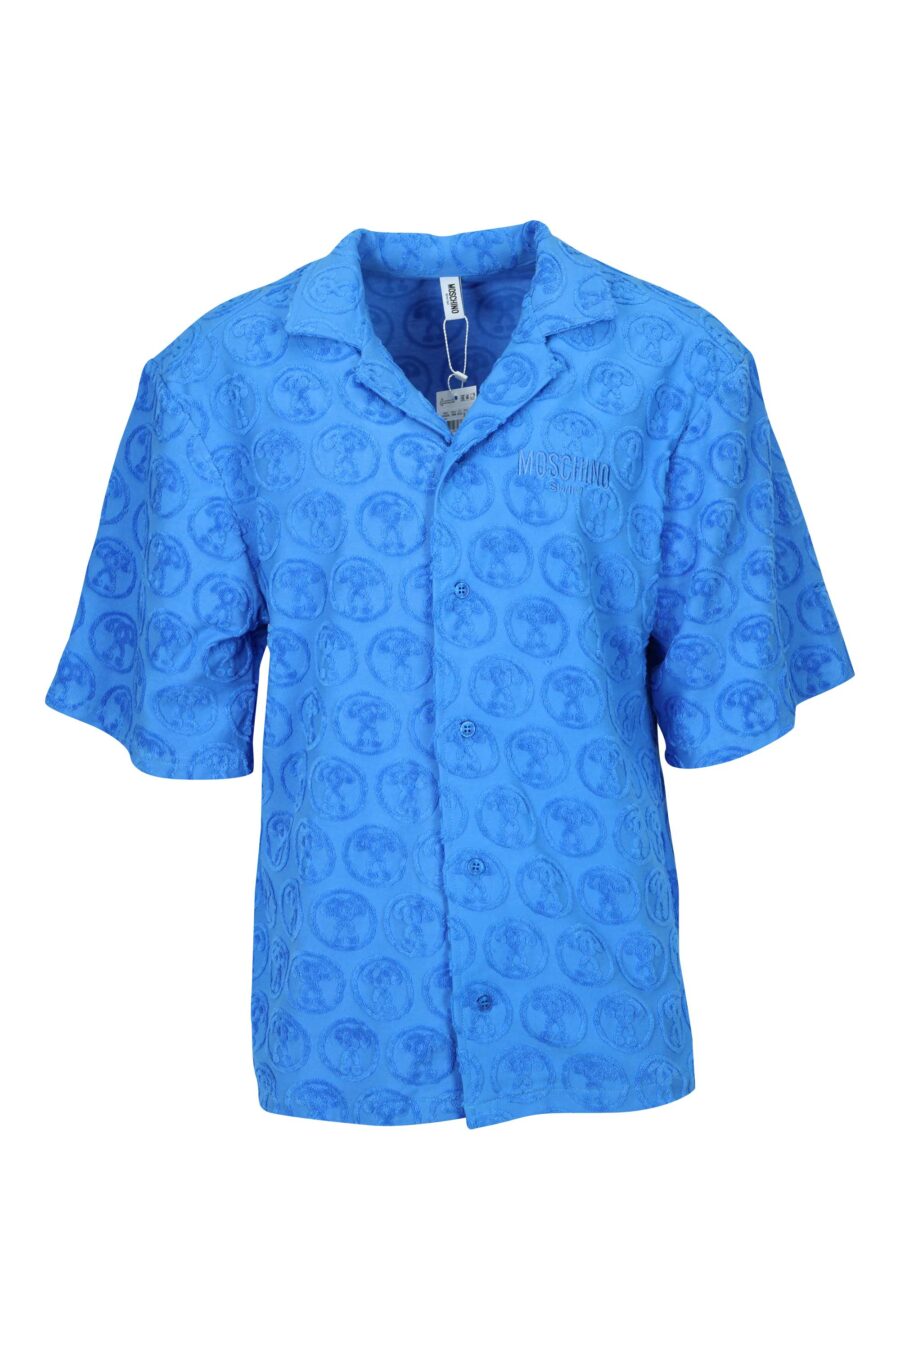 Camisa azul manga corta con "all over logo" doble pregunta - 667113670638